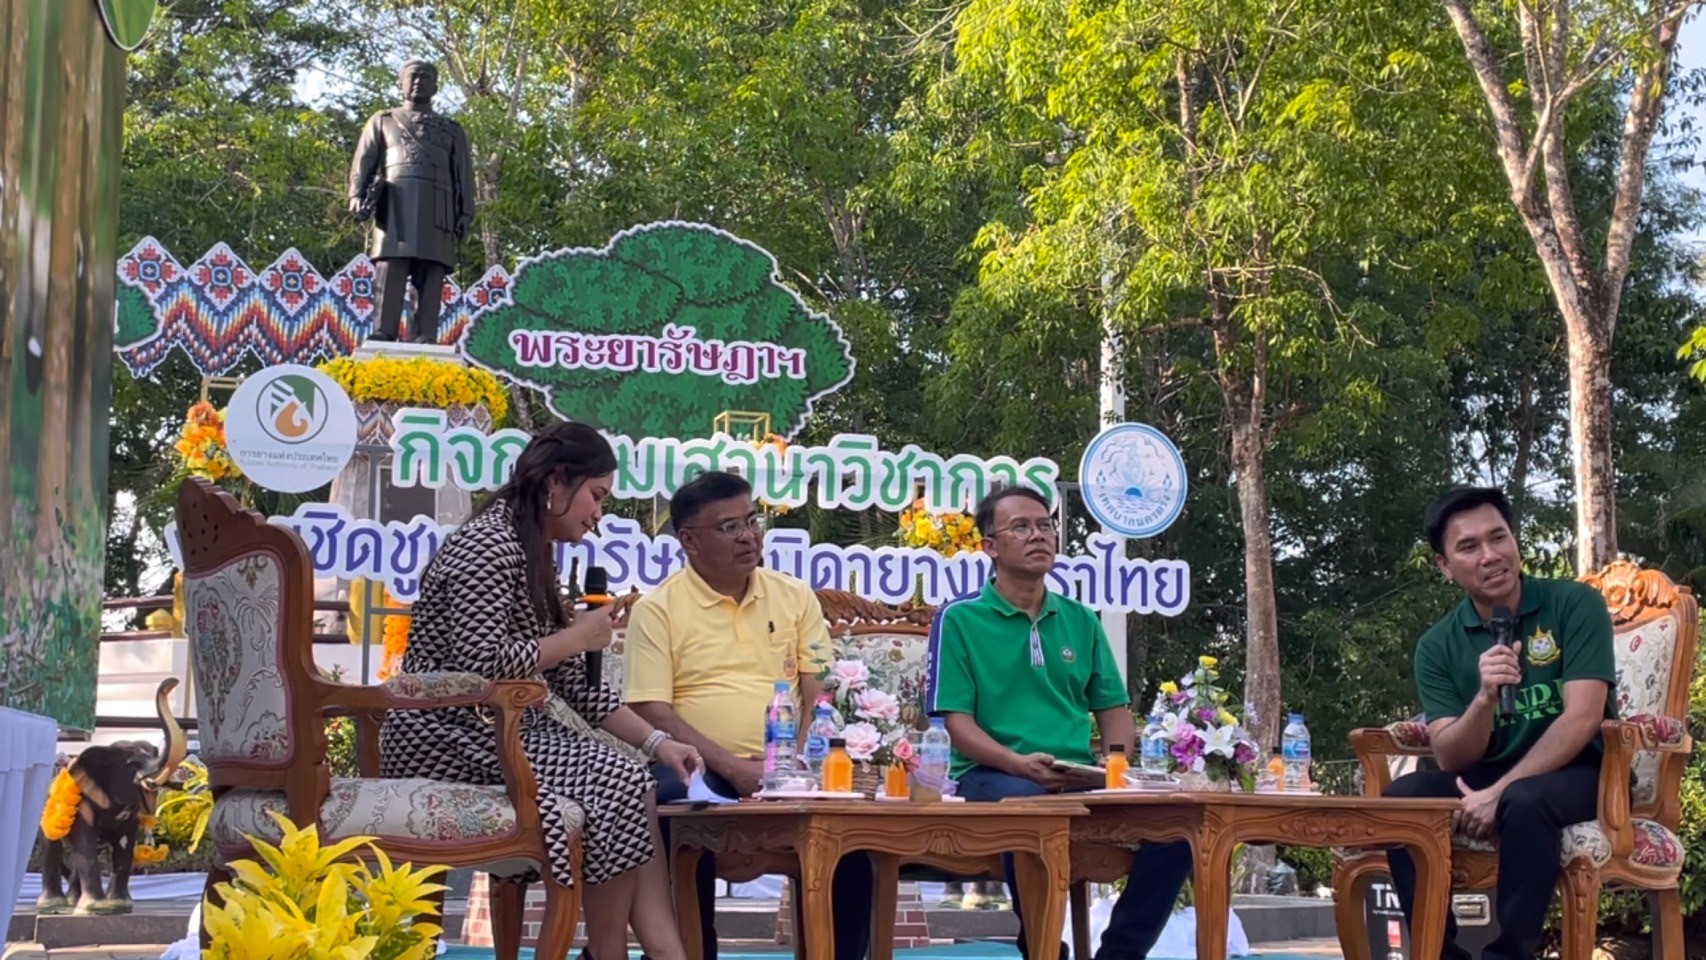 การยางแห่งประเทศไทย จัดเวทีเสวนา คาร์บอนเครดิตในประเทศไทย ขายได้จริงหรือ